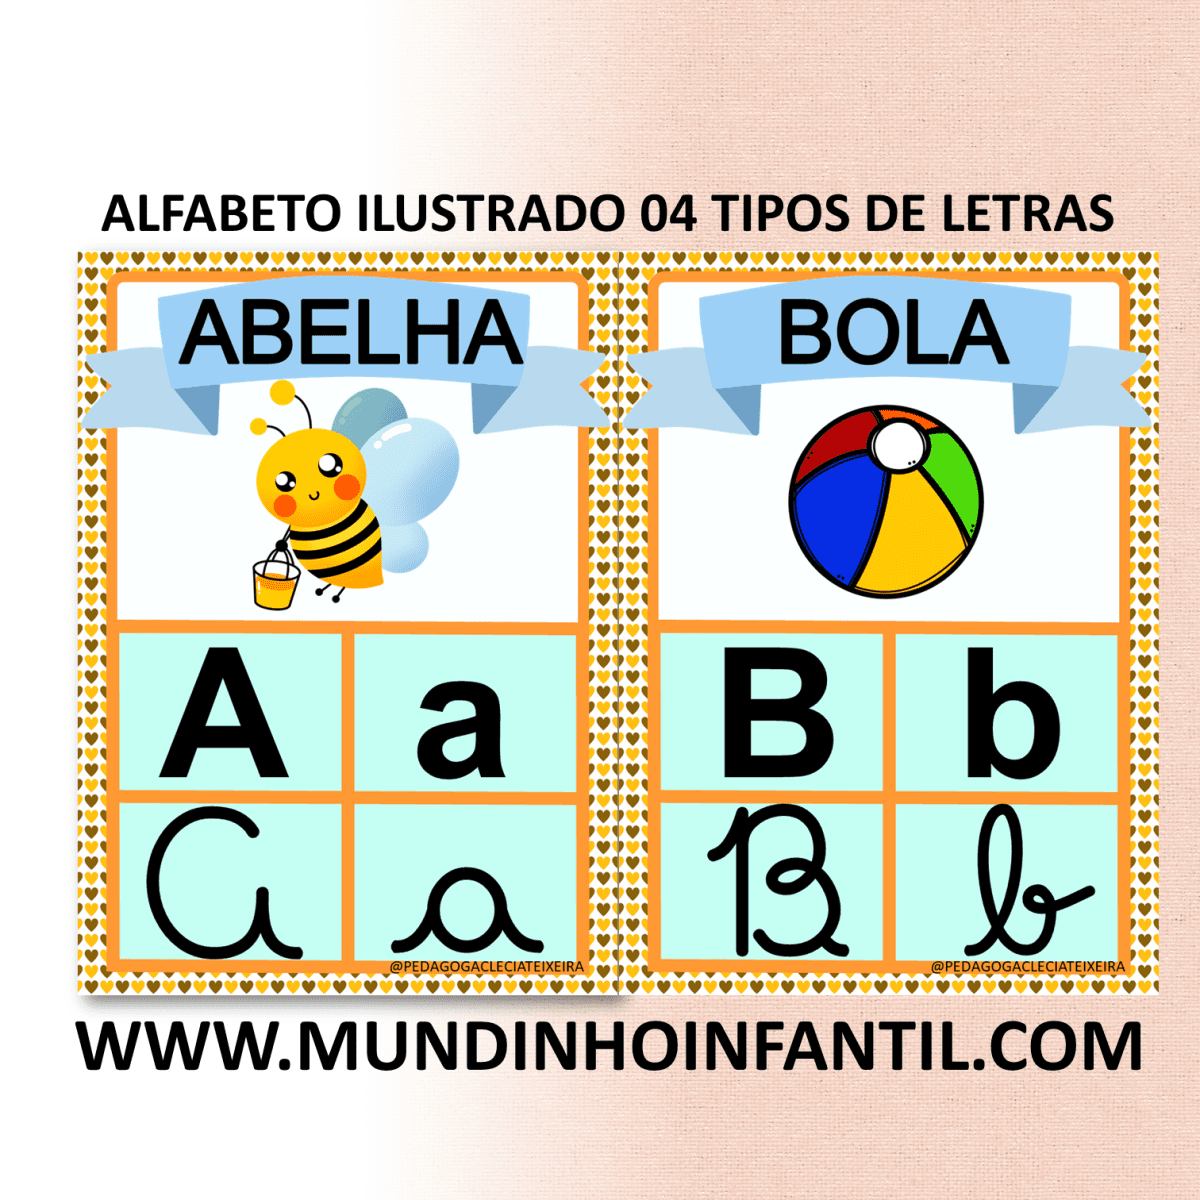 Imagem do produto Alfabeto ilustrado 04 tipos de letras